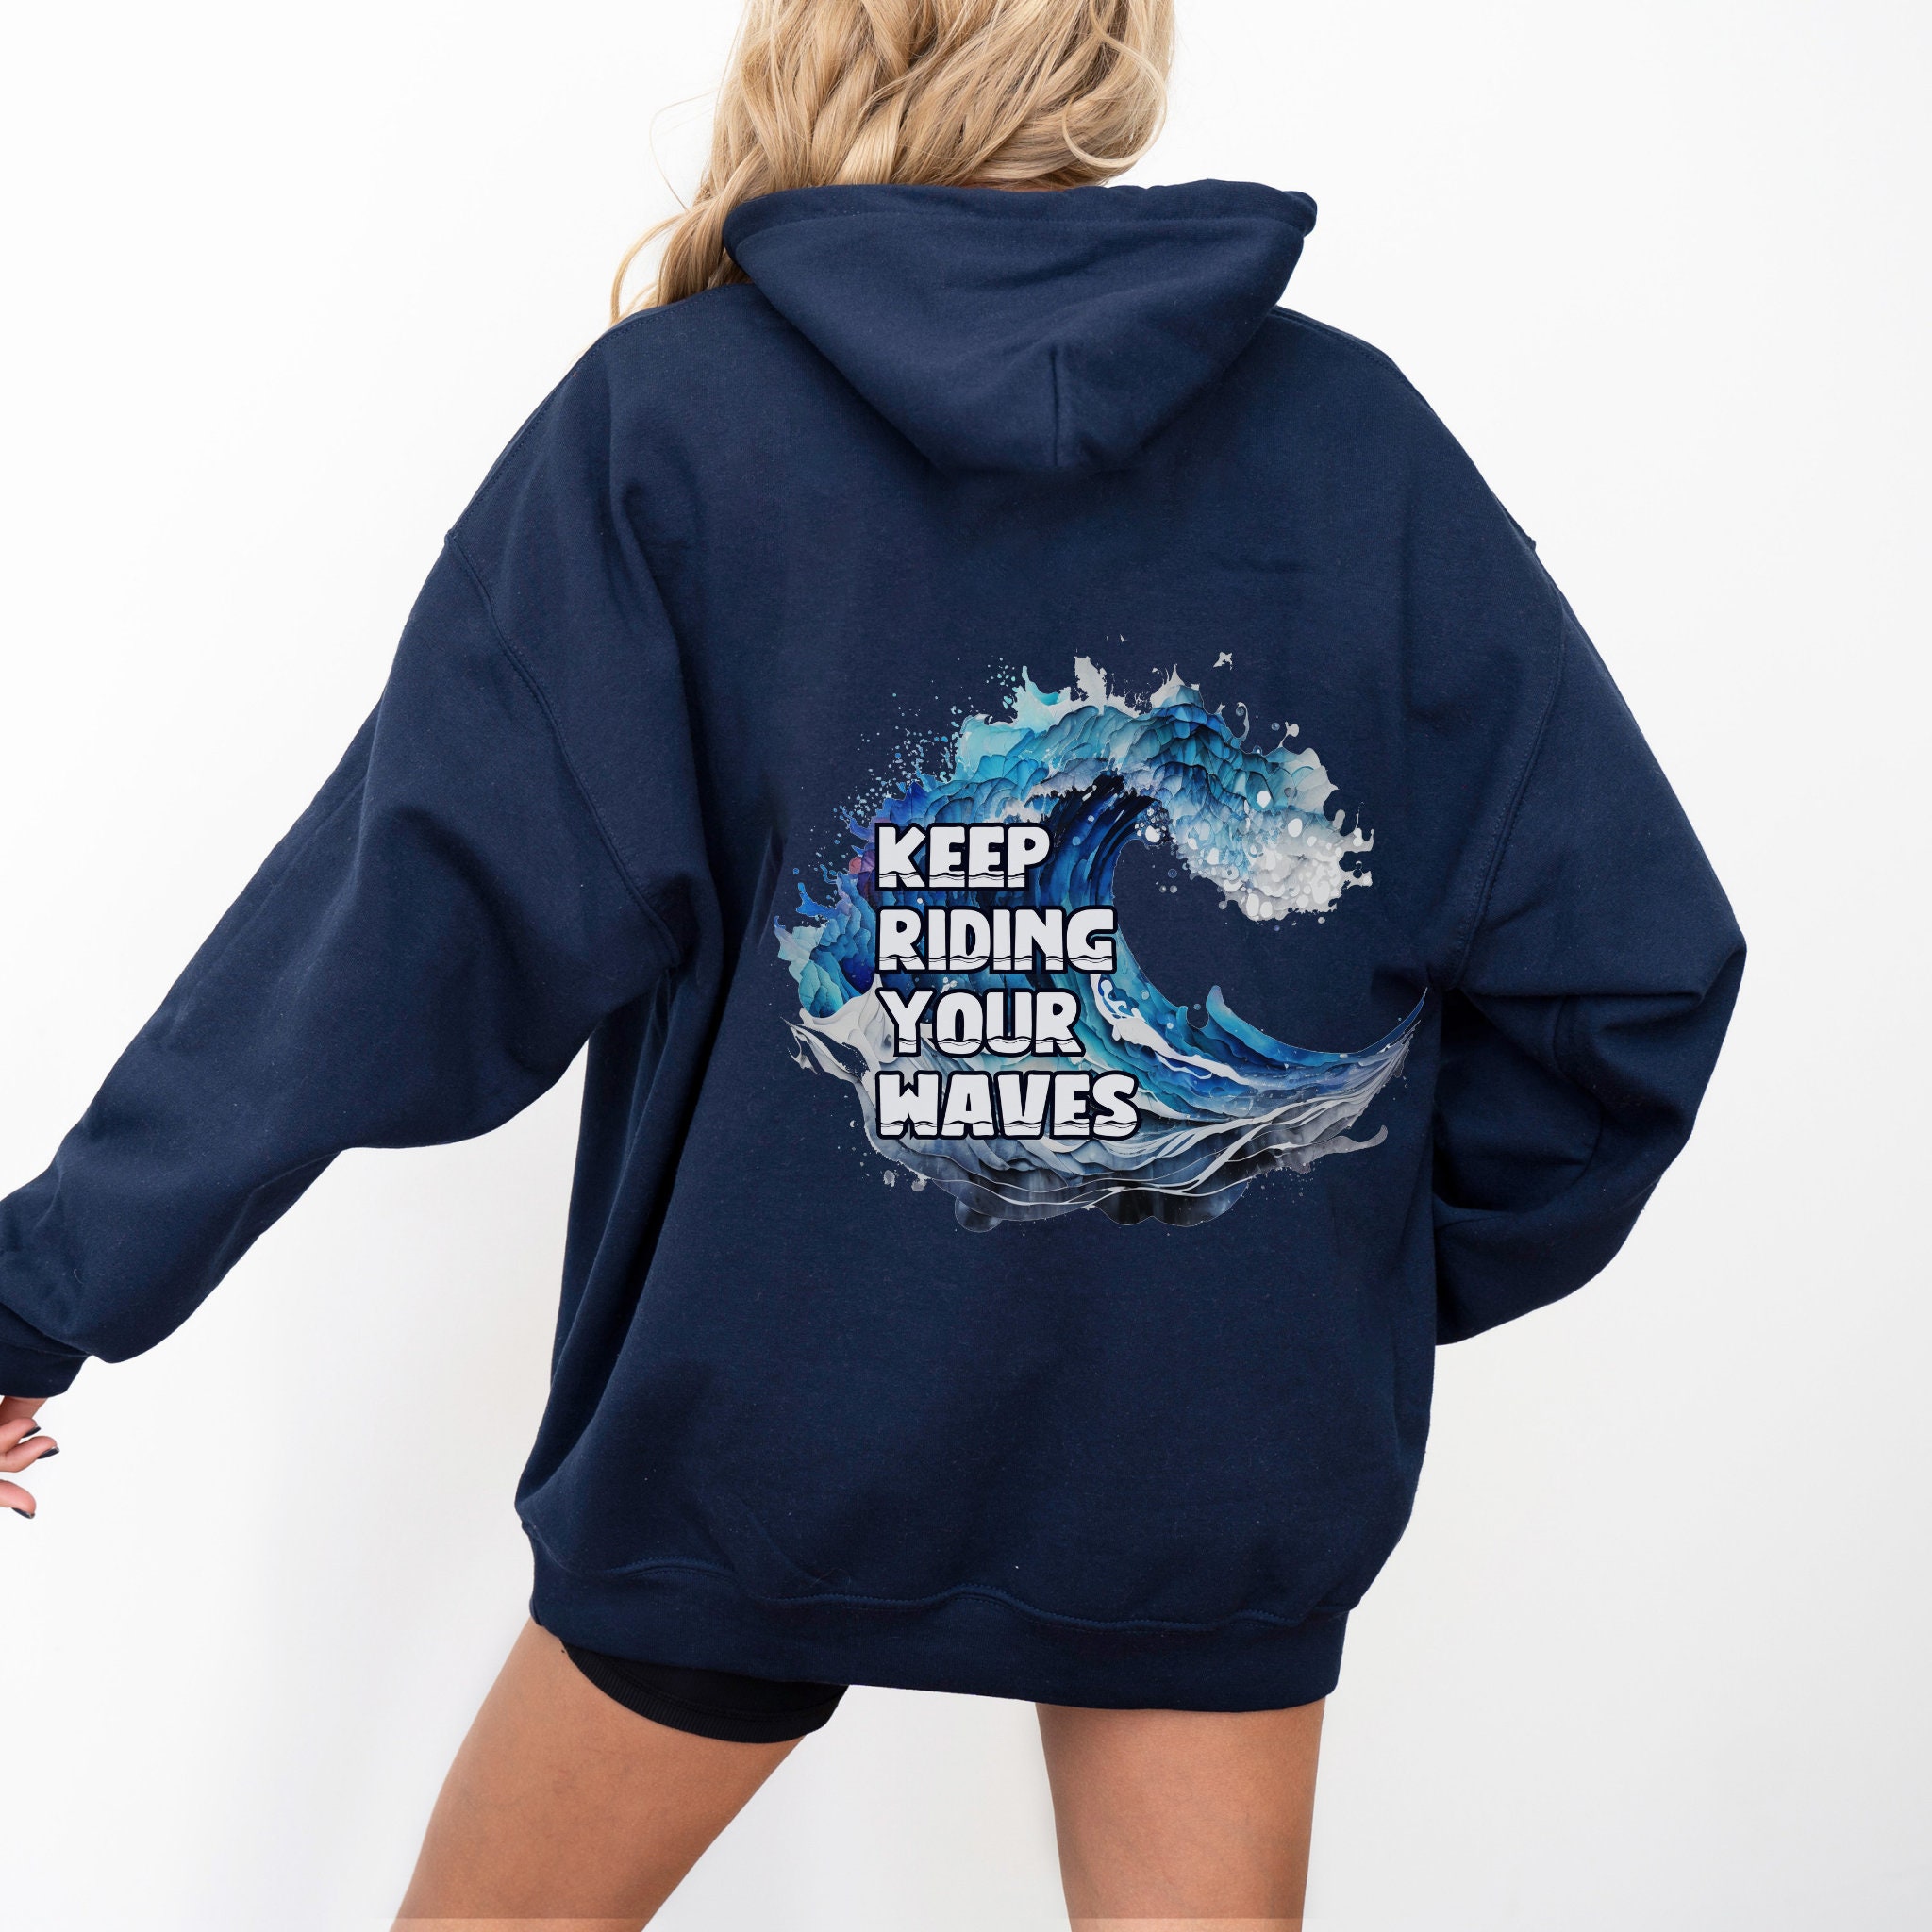 The wave hoodie